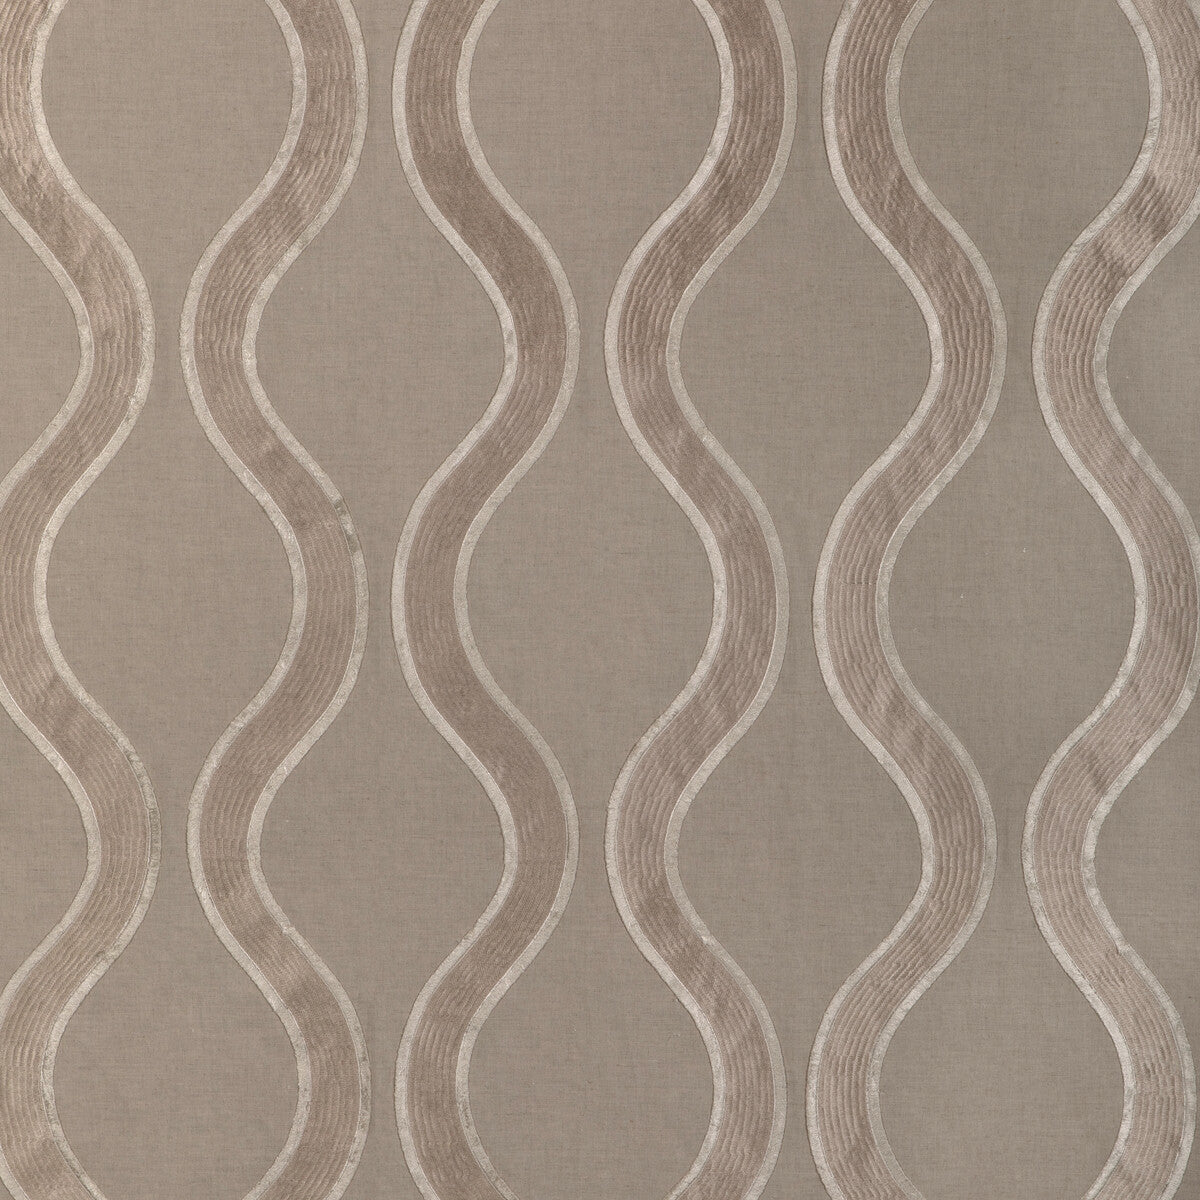 Kravet Design fabric in 90012-106 color - pattern 90012.106.0 - by Kravet Design